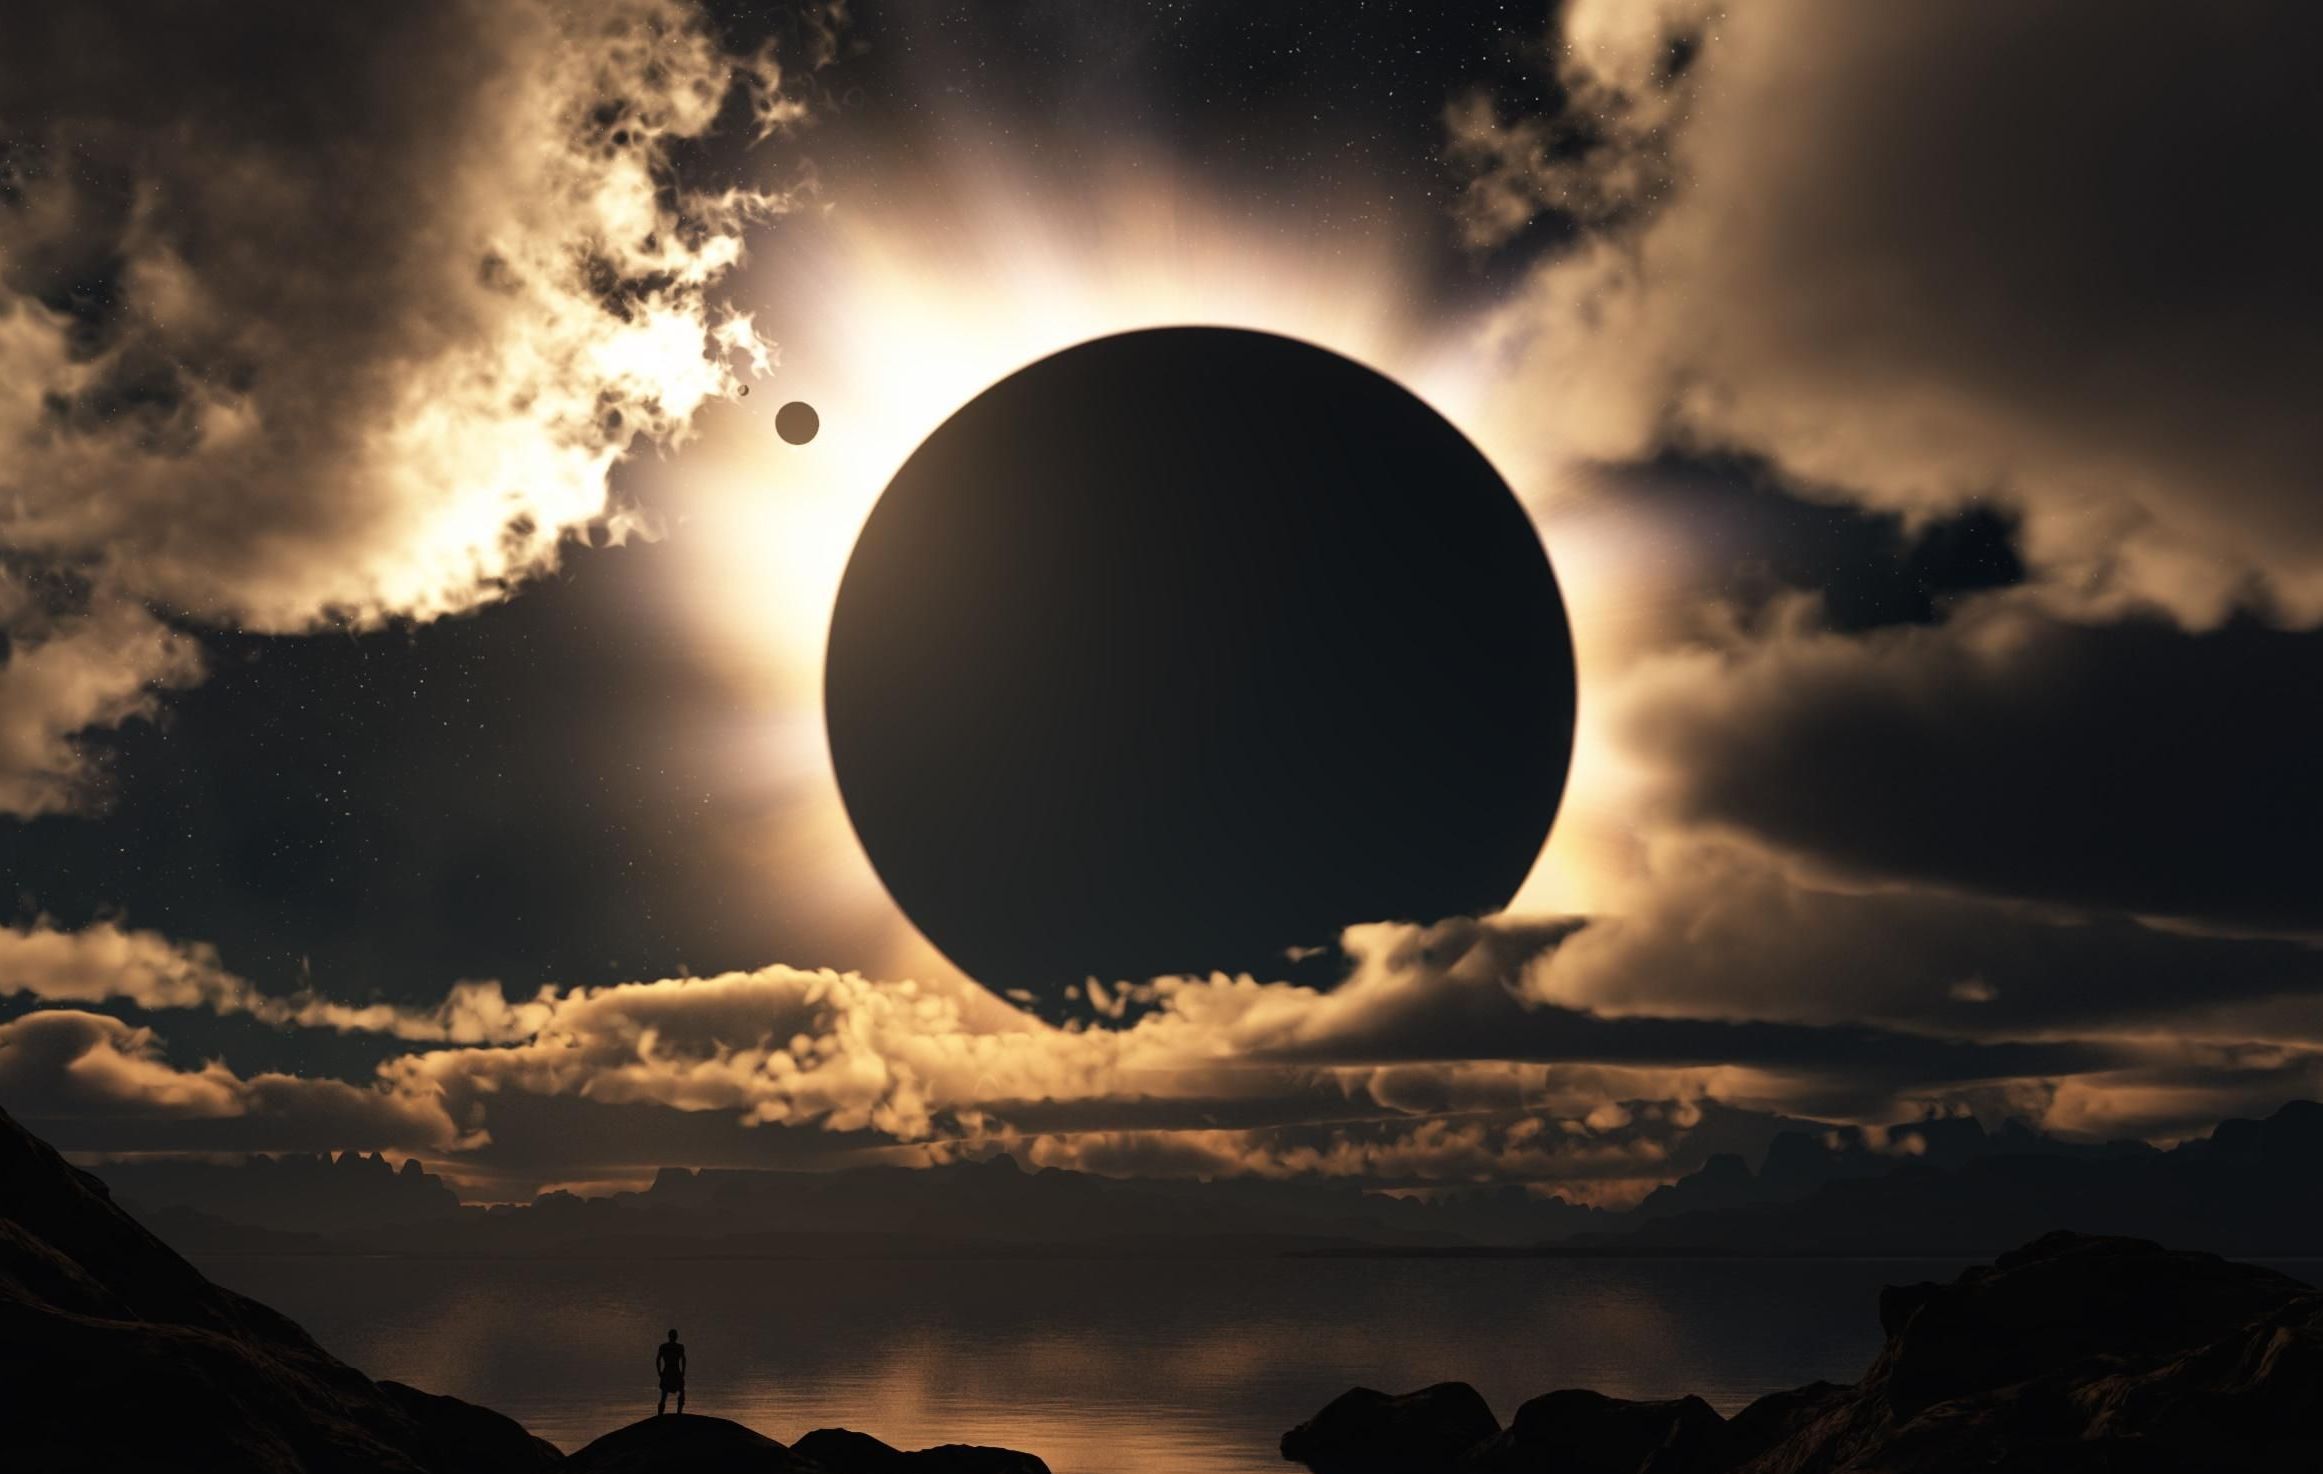 Eclipse solaire du 20 Mars 2015 : Horaires & Astuces pour regarder l'éclipse sans lunettes